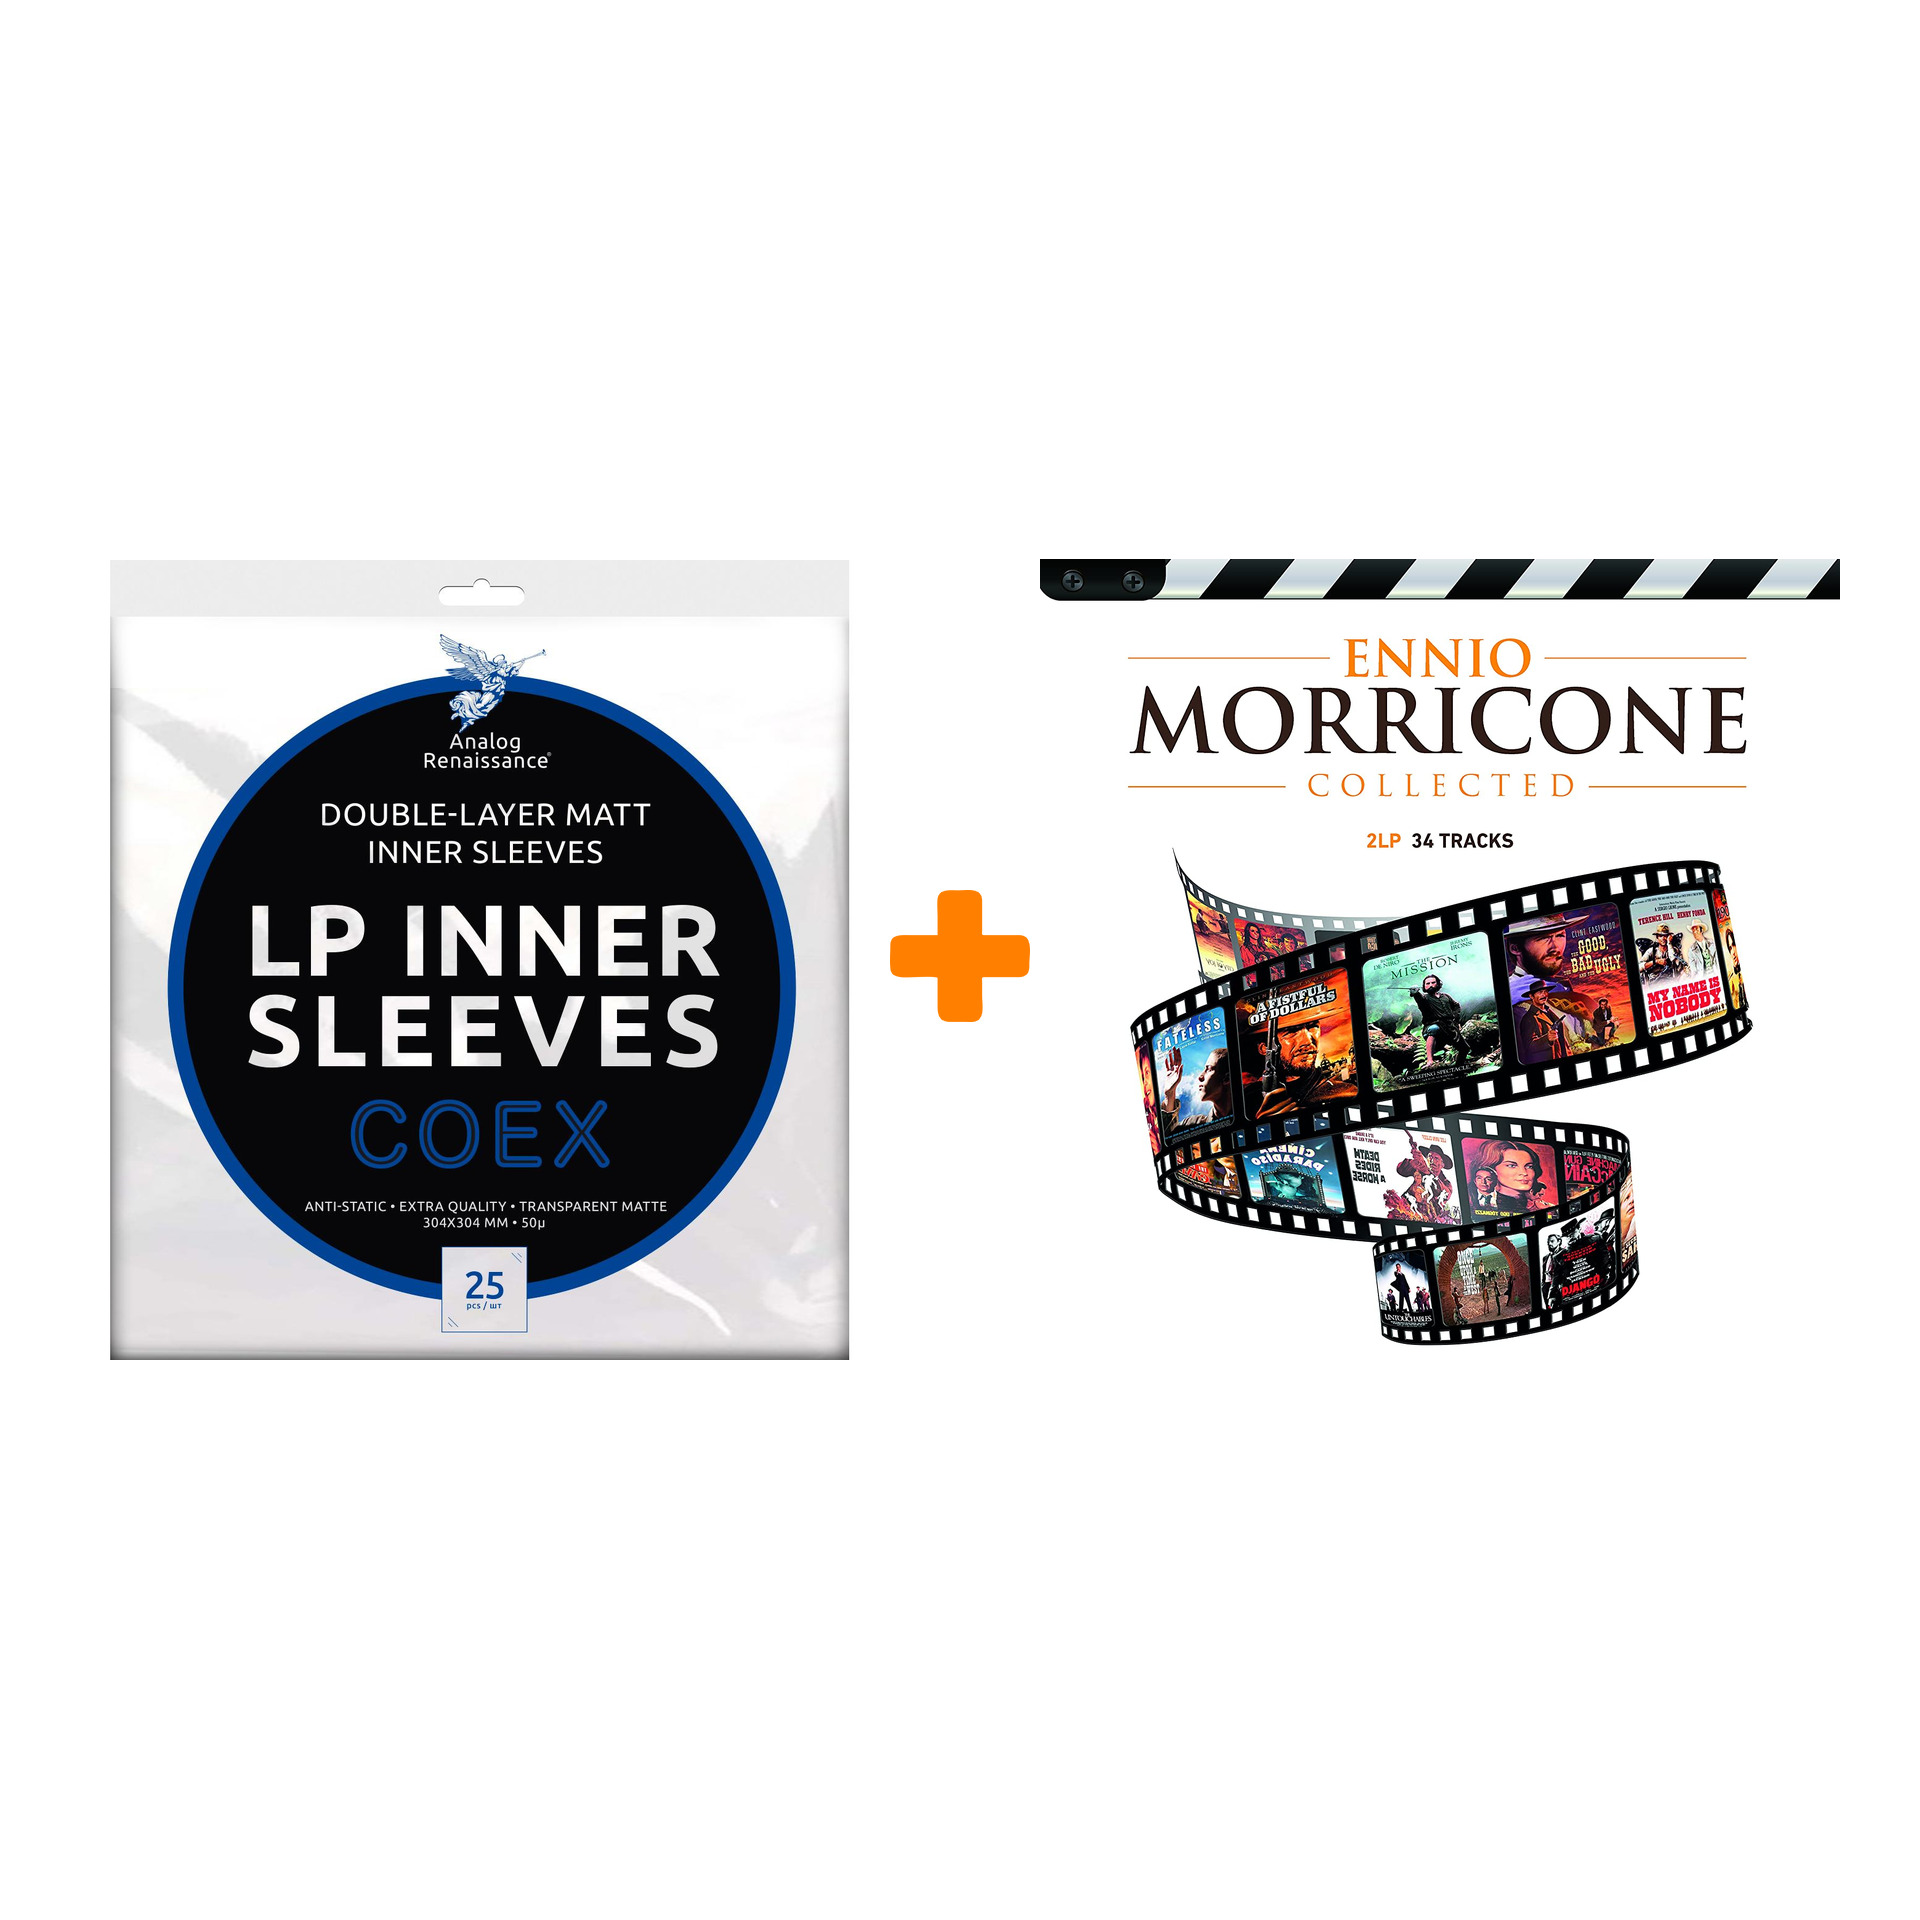 MORRICONE ENNIO Collected 2LP + Конверты внутренние COEX для грампластинок 12 25шт Набор